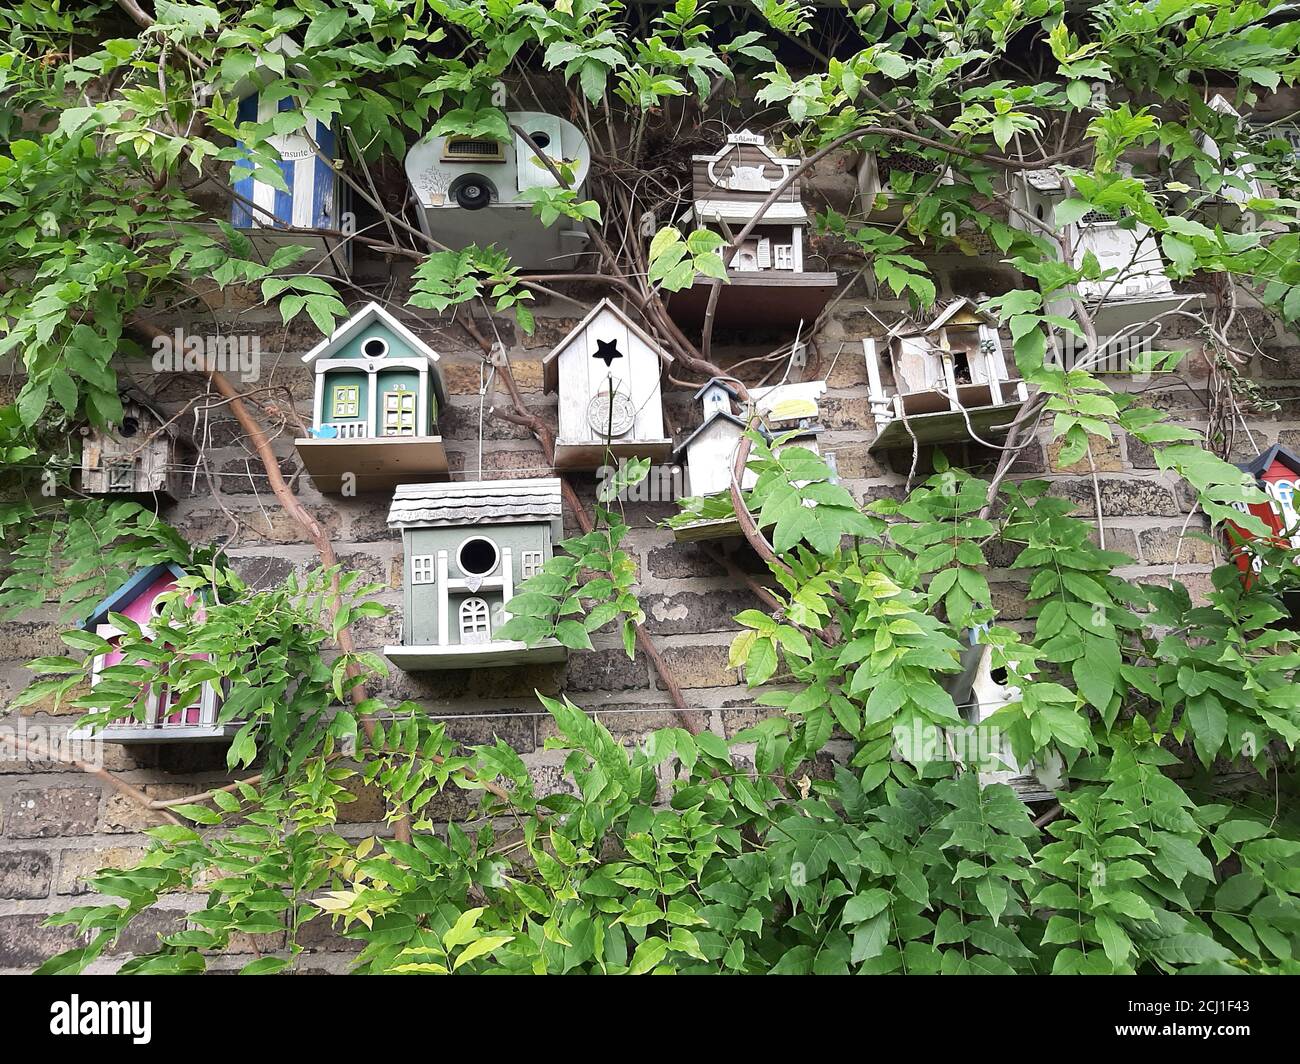 Mur de verdure avec plusieurs maisons d'oiseaux impaires, Allemagne Banque D'Images